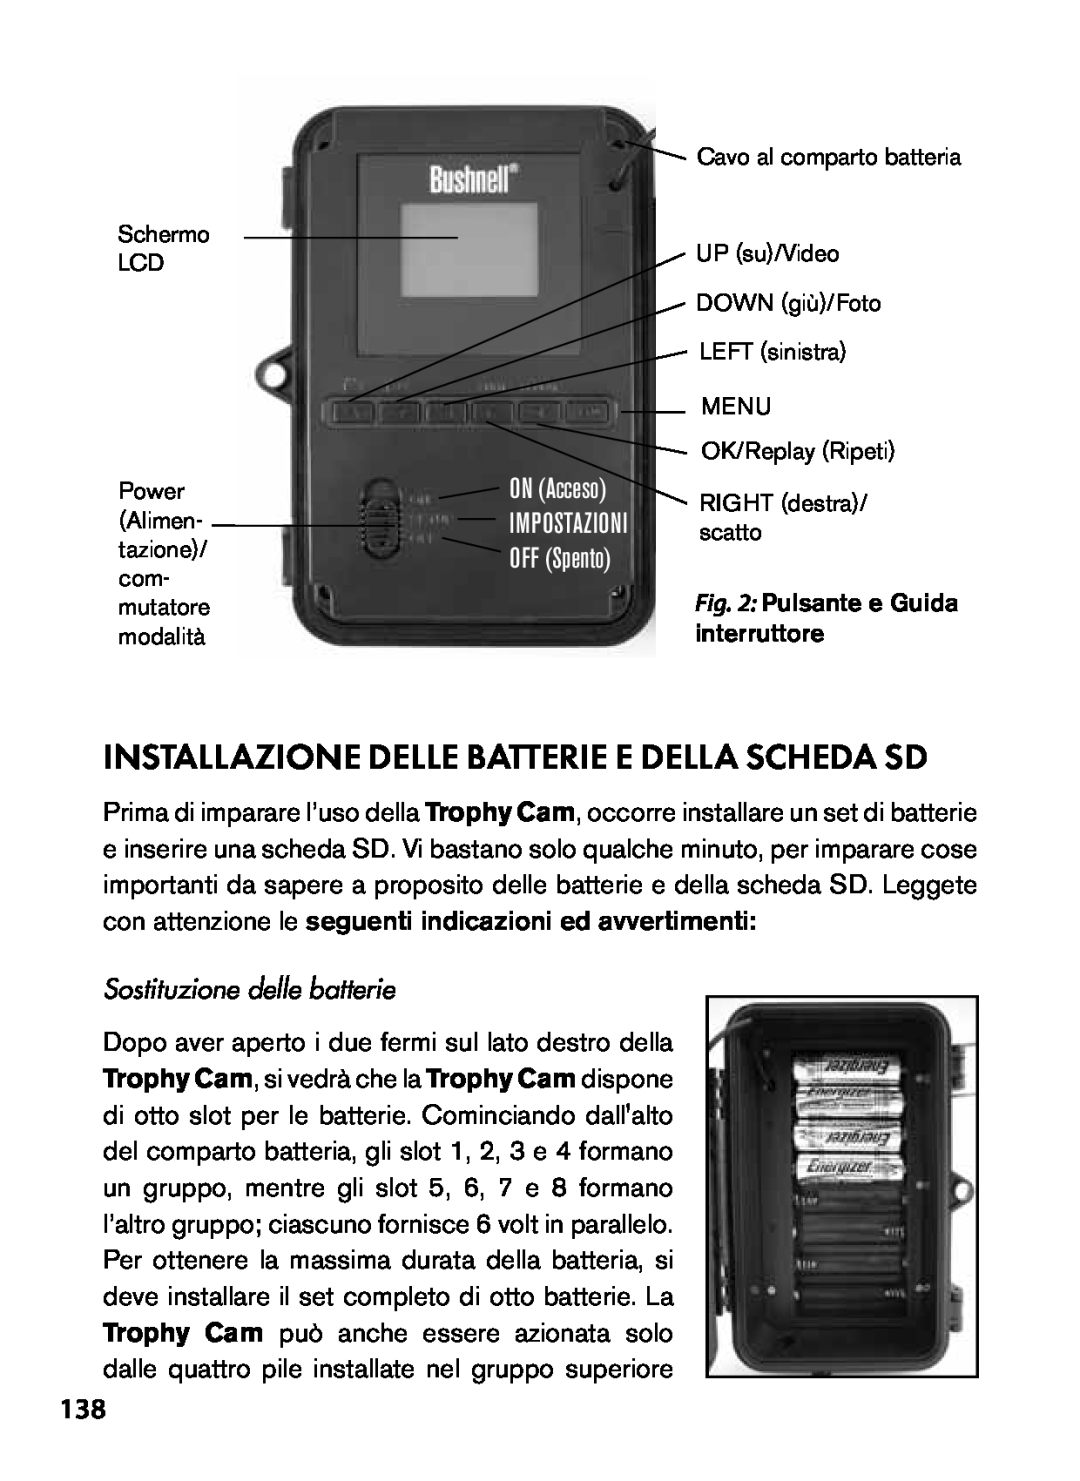 Bushnell 119455, 119445 INSTALLAZIONE delle batterie e della SCHEDA SD, ON Acceso, OFF Spento, Sostituzione delle batterie 